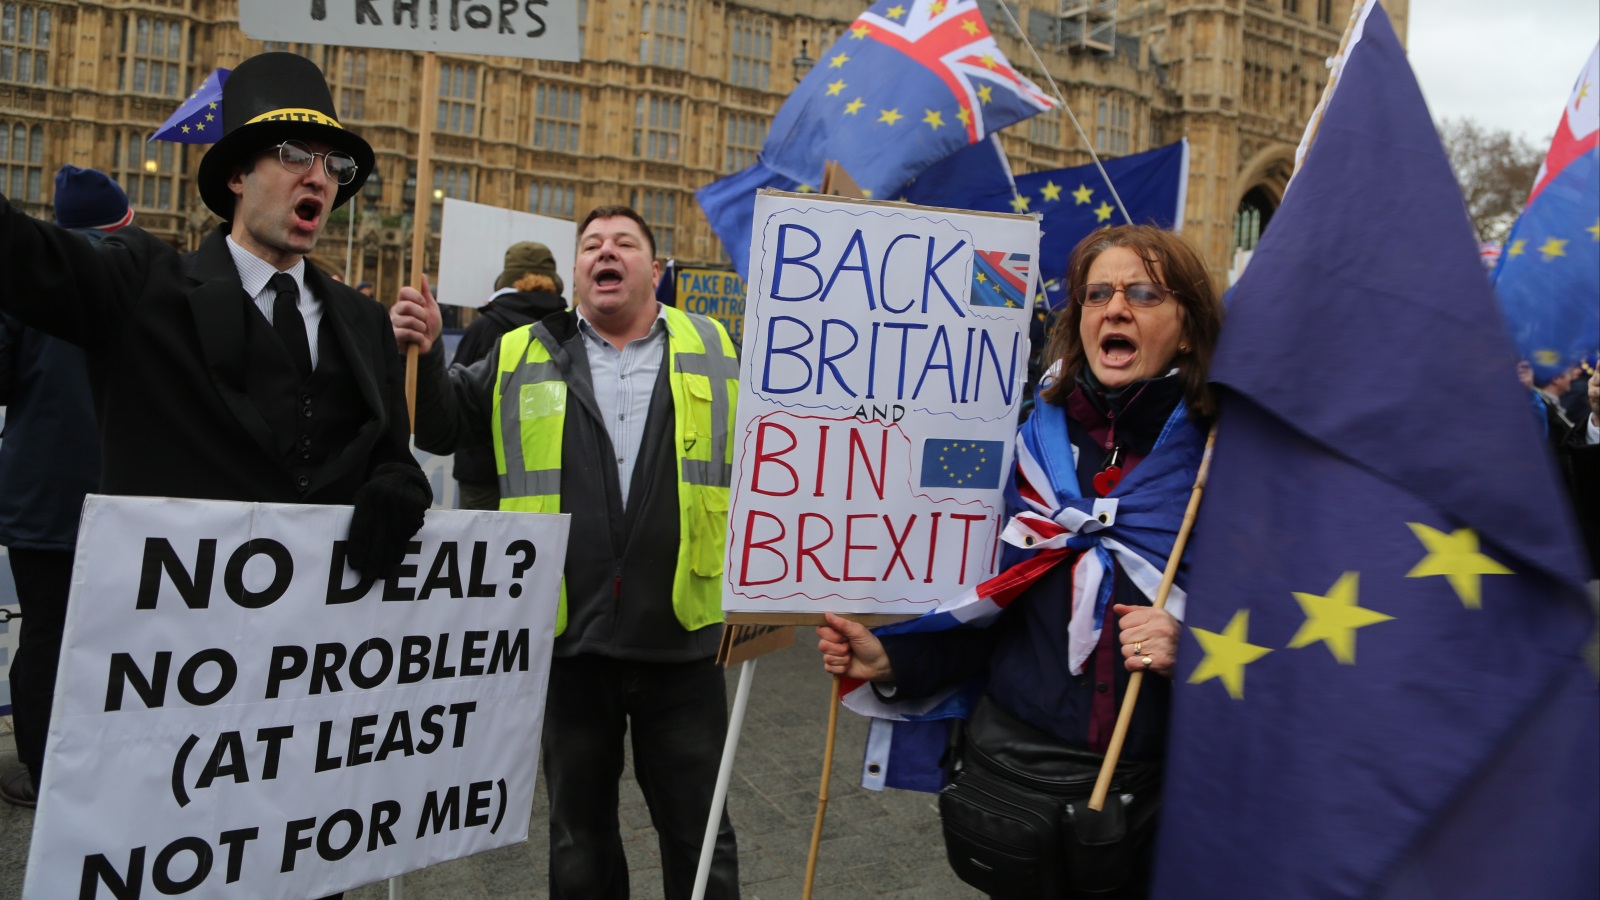 ‪أعداد البريطانيين الذين تراجعوا عن دعم الخروج من الاتحاد الأوروبي في تزايد مستمر‬ أعداد البريطانيين الذين تراجعوا عن دعم الخروج من الاتحاد الأوروبي في تزايد مستمر (الأناضول)